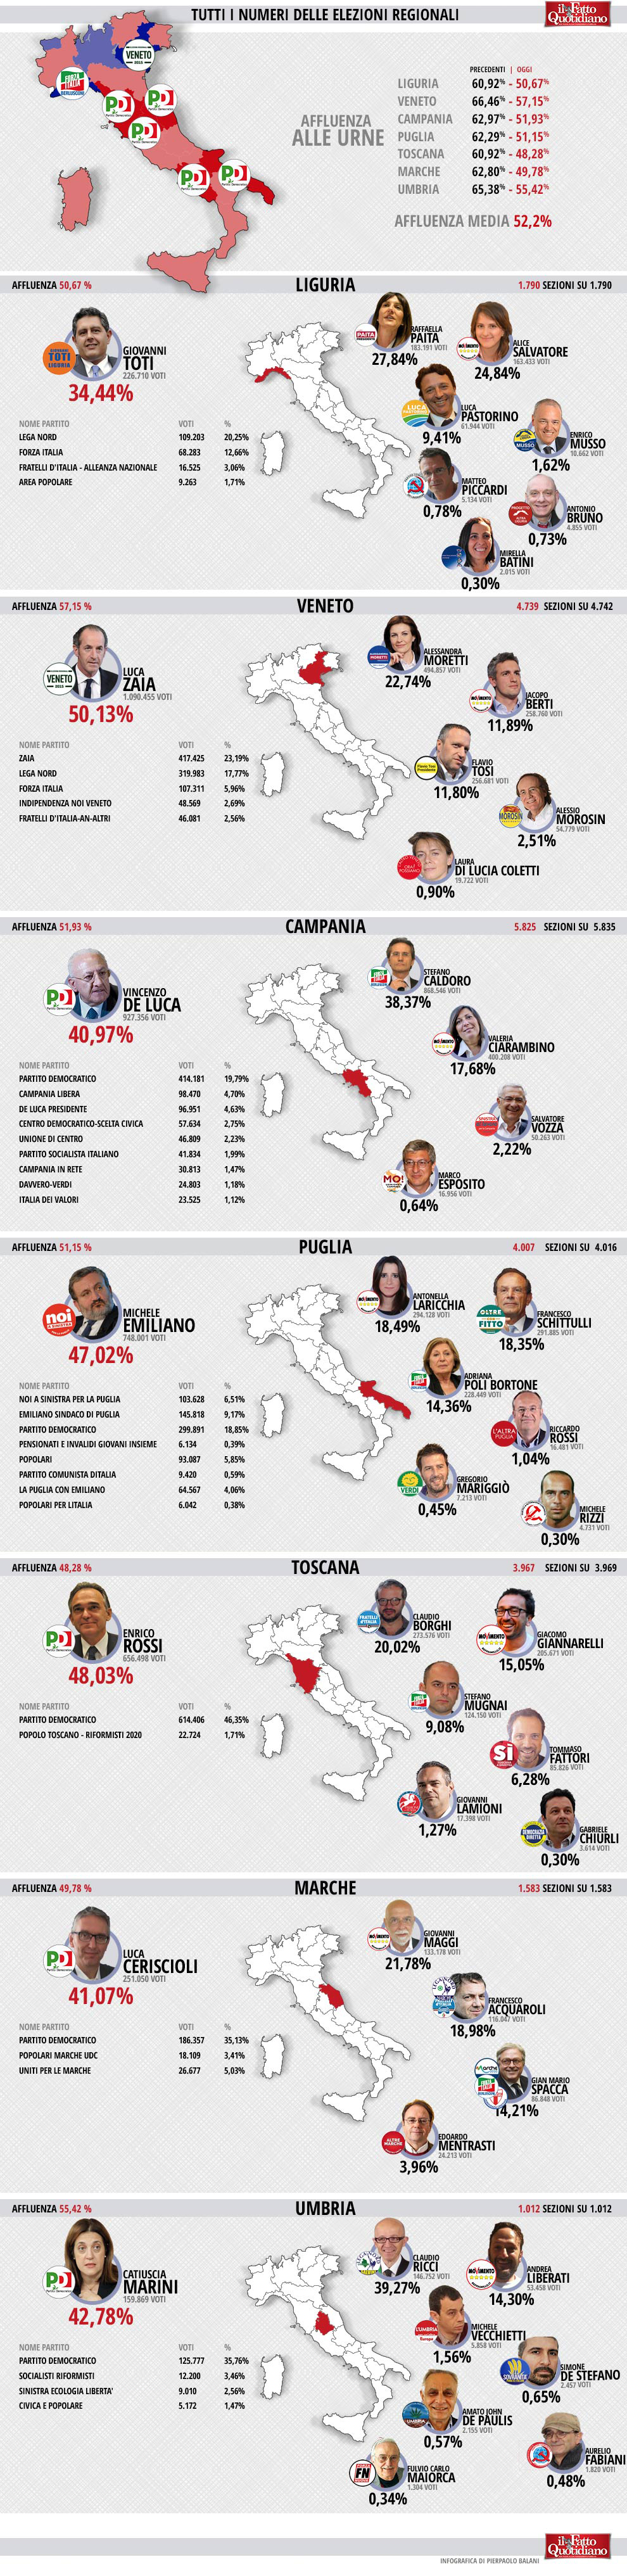 009-infografica-ilfattoquotidiano-elezioni-regionali-2015